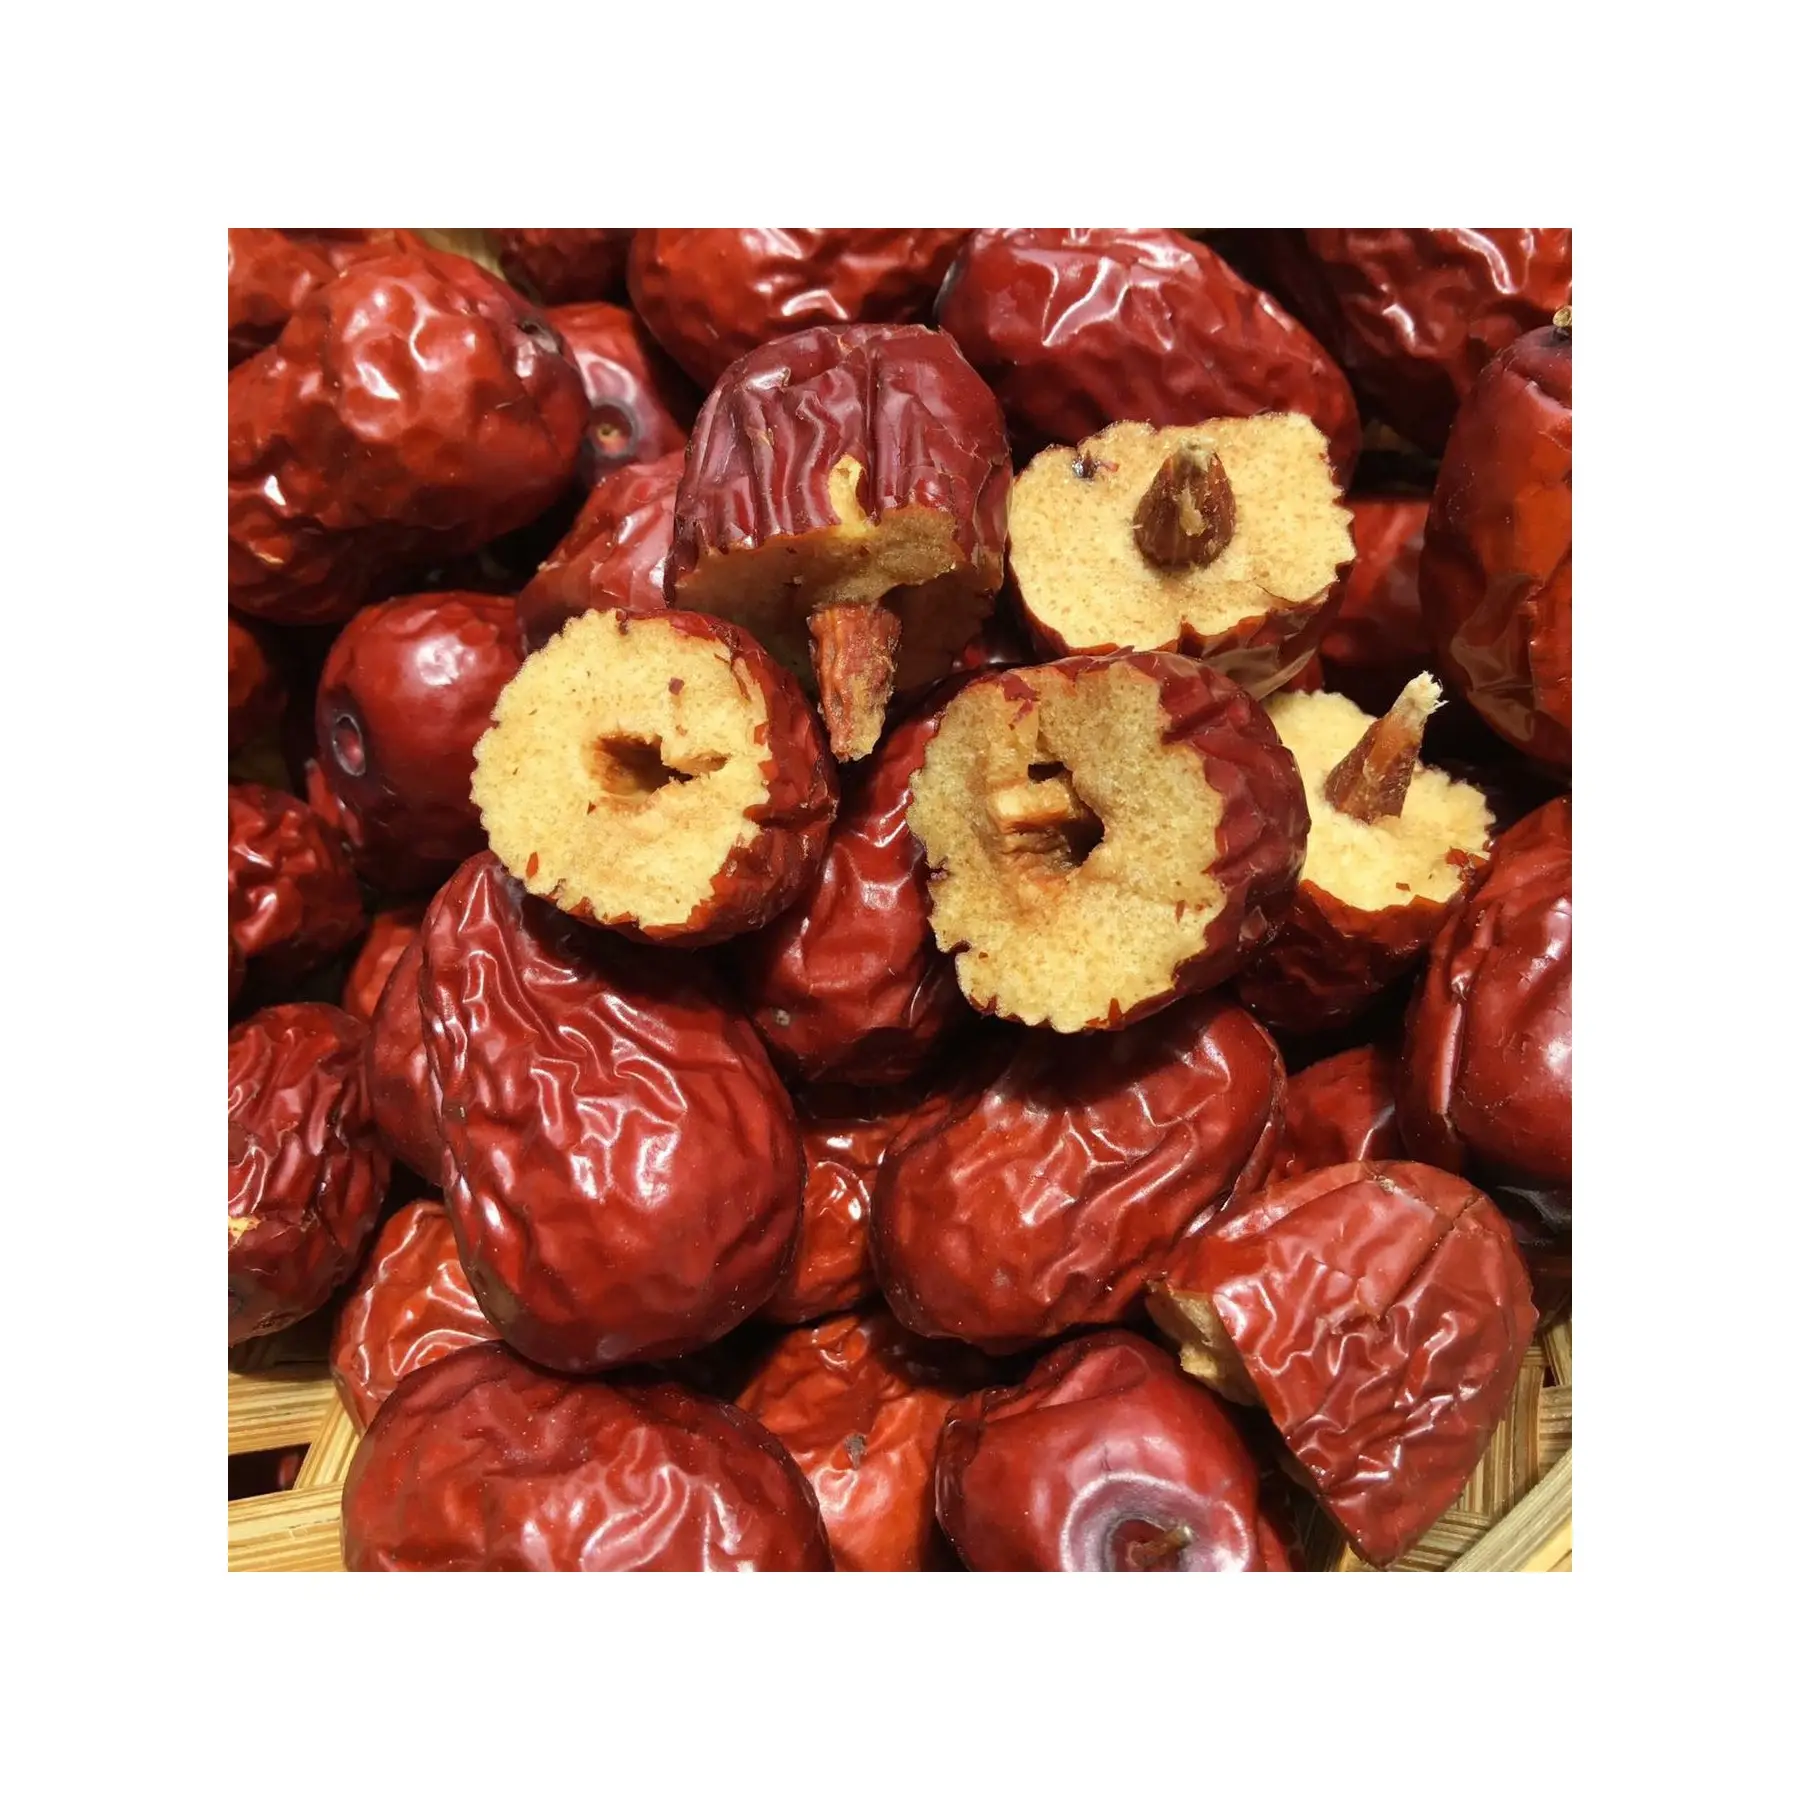 Buona qualità rosso essiccato Ziziphus Jujuba 100% naturale biologico cinese mele alimenti sani snack